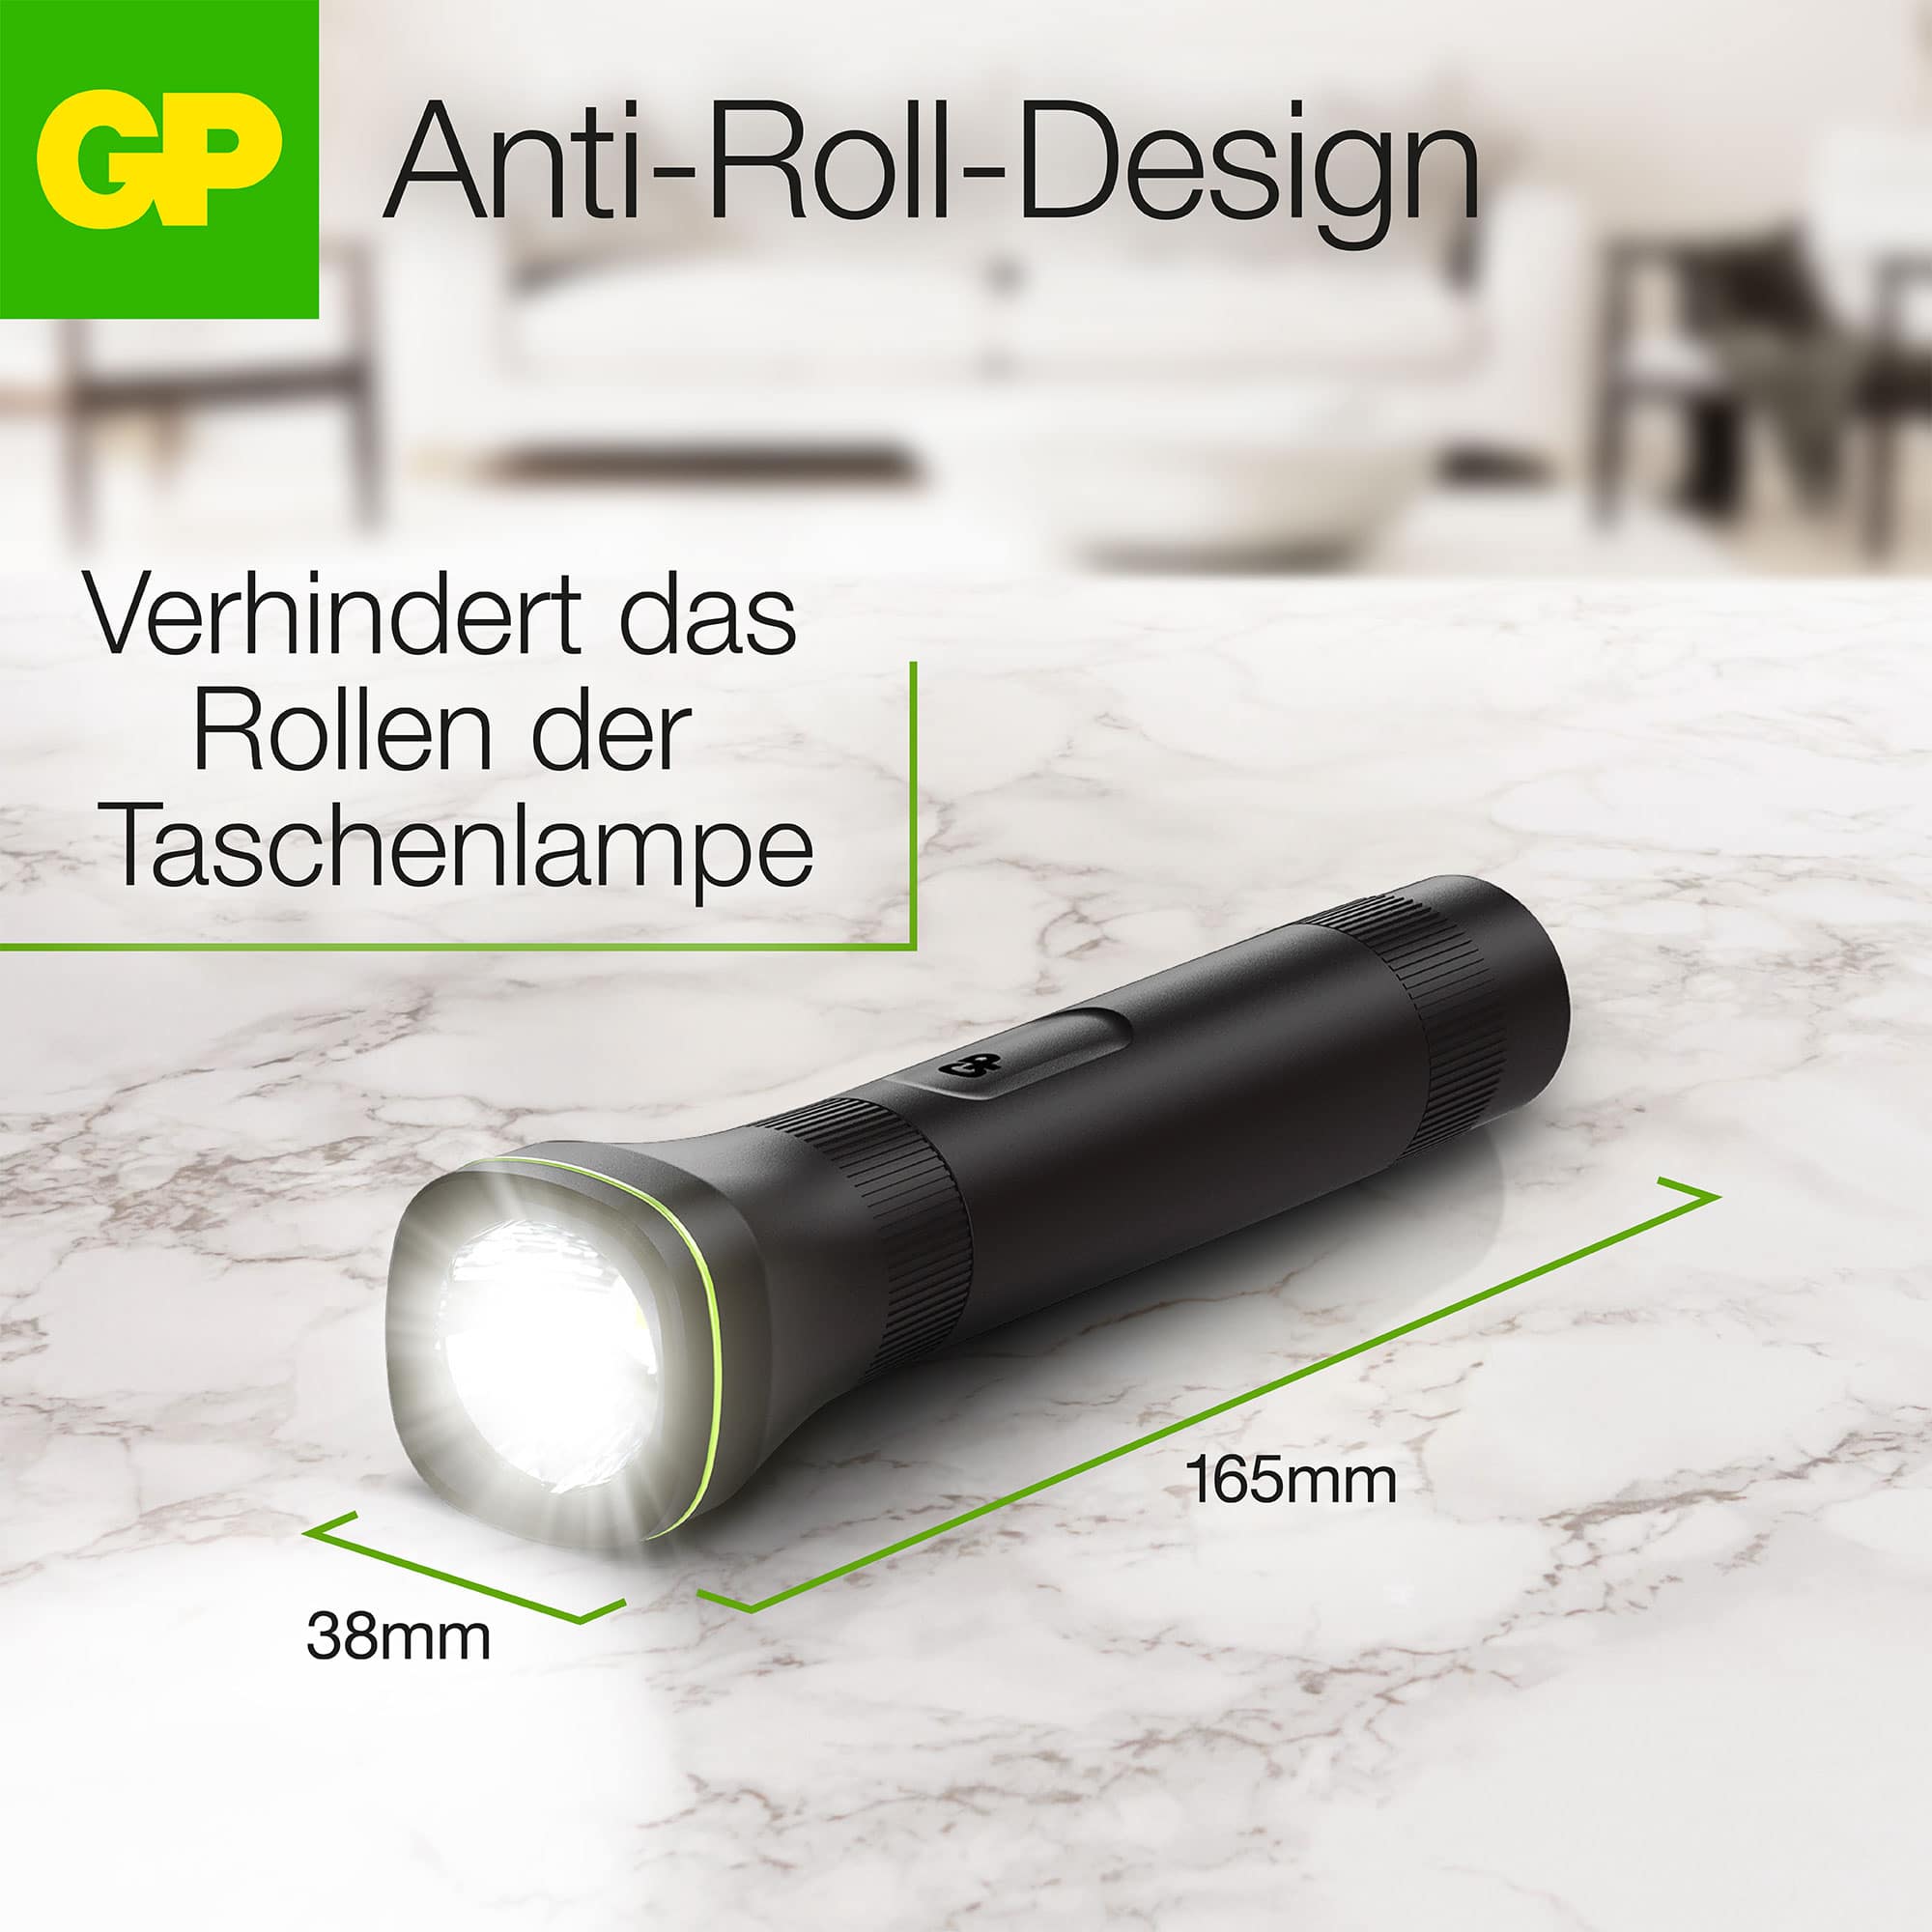 GP LED-Taschenlampe C107, 70lm , 166 mm lang